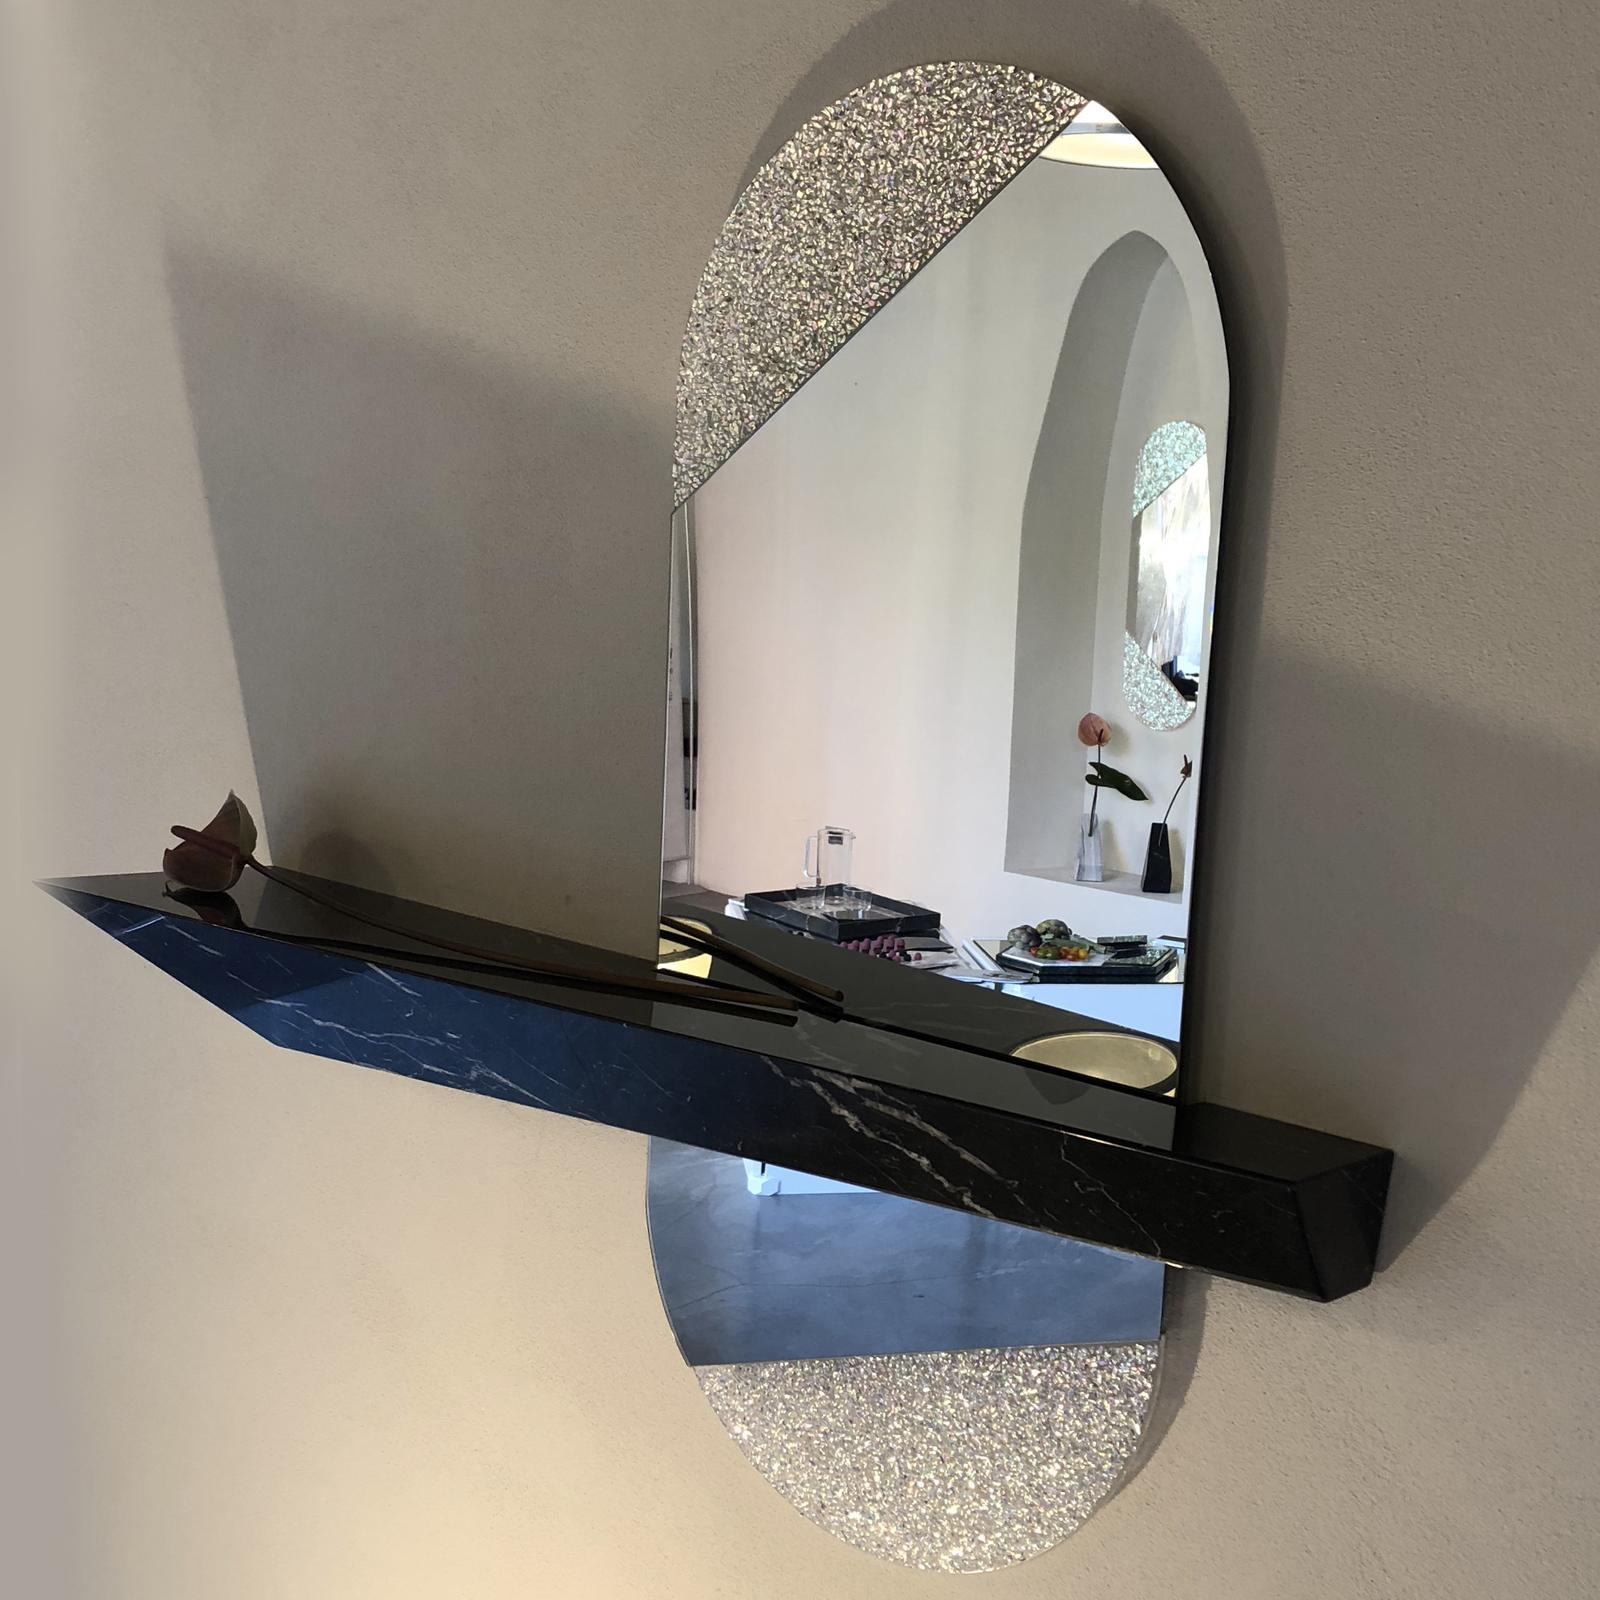 Ce miroir, qui constitue un ajout étonnant à une maison contemporaine, est une pièce accueillante idéale à exposer dans une entrée. Elle présente une tablette en Marquina noire faite à la main avec une finition brillante, en forme de prisme allongé